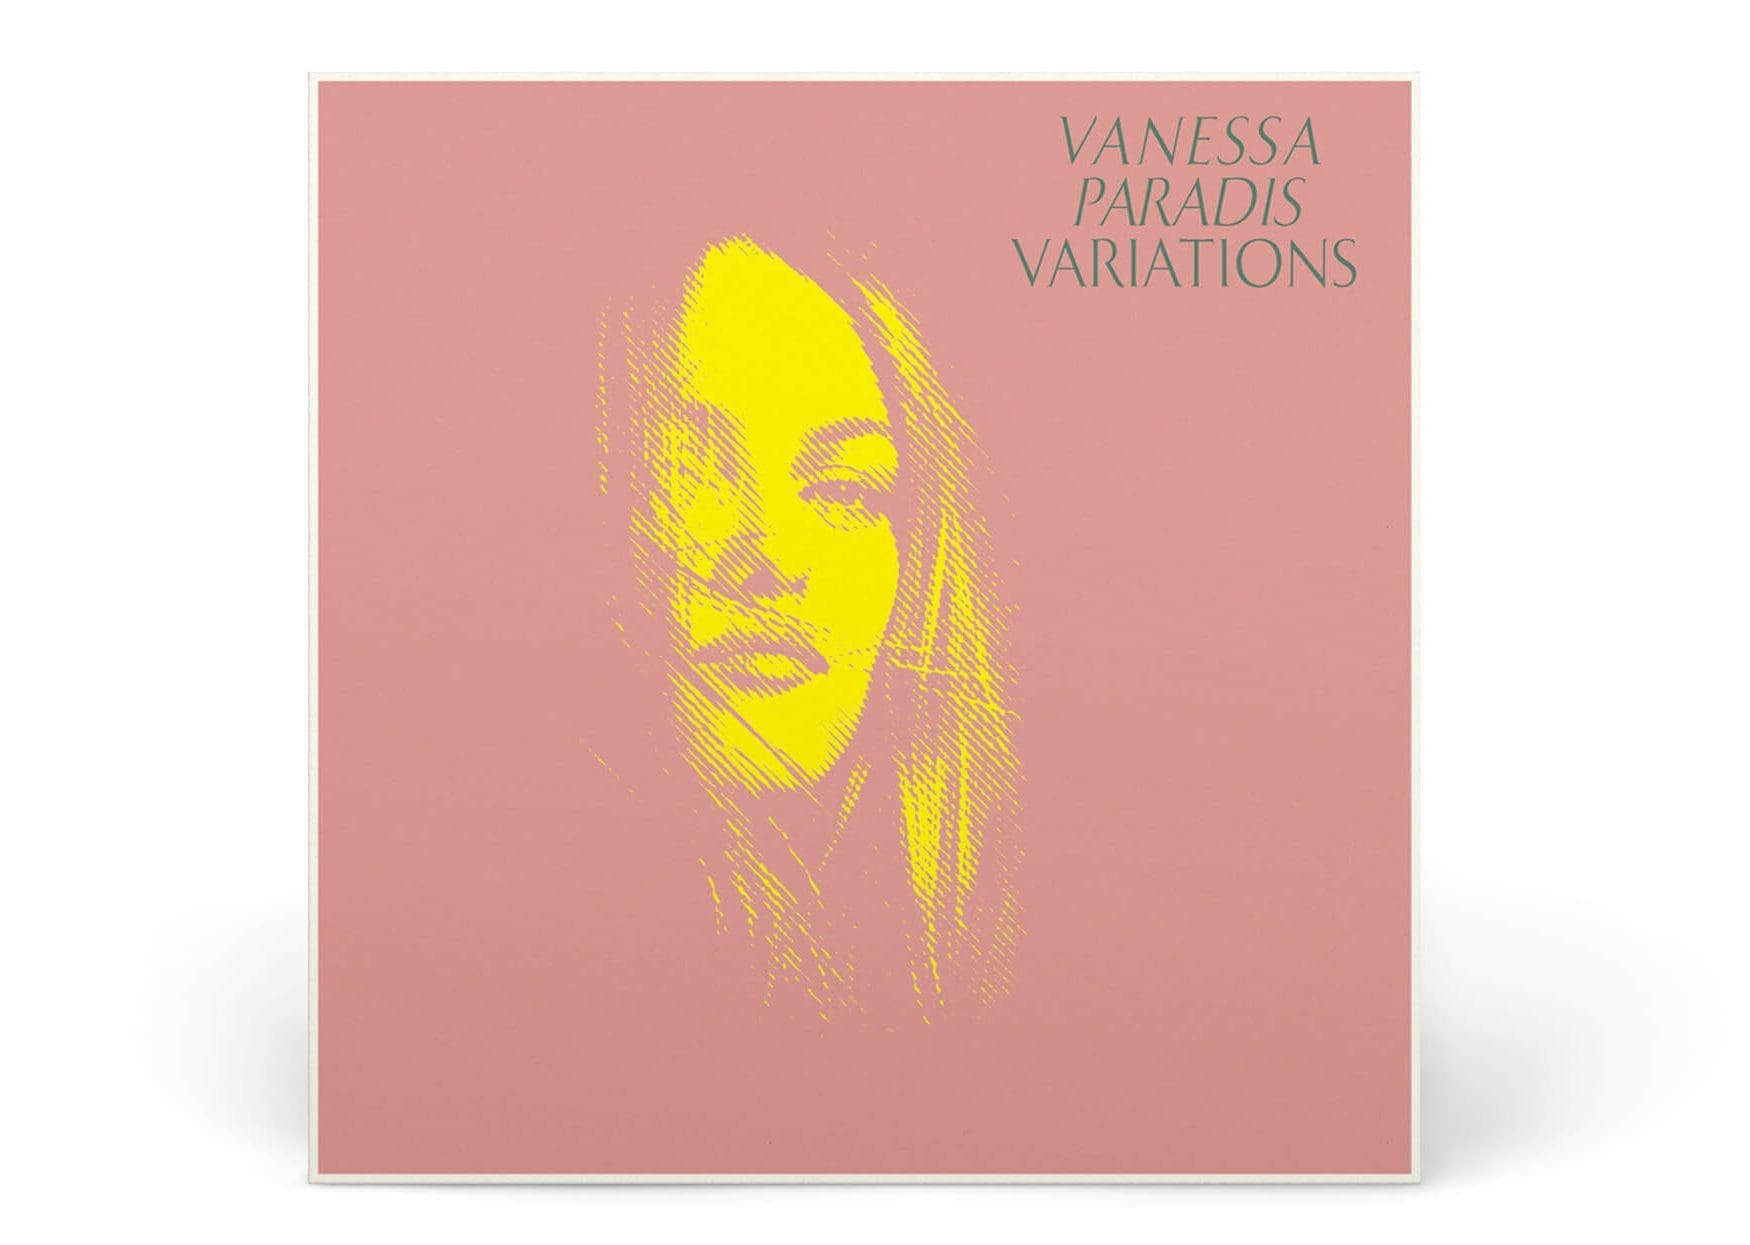 Couverture du double vinyle, Variations de Vanessa Paradis en édition limitée, portrait tramé, design vintage par IchetKar